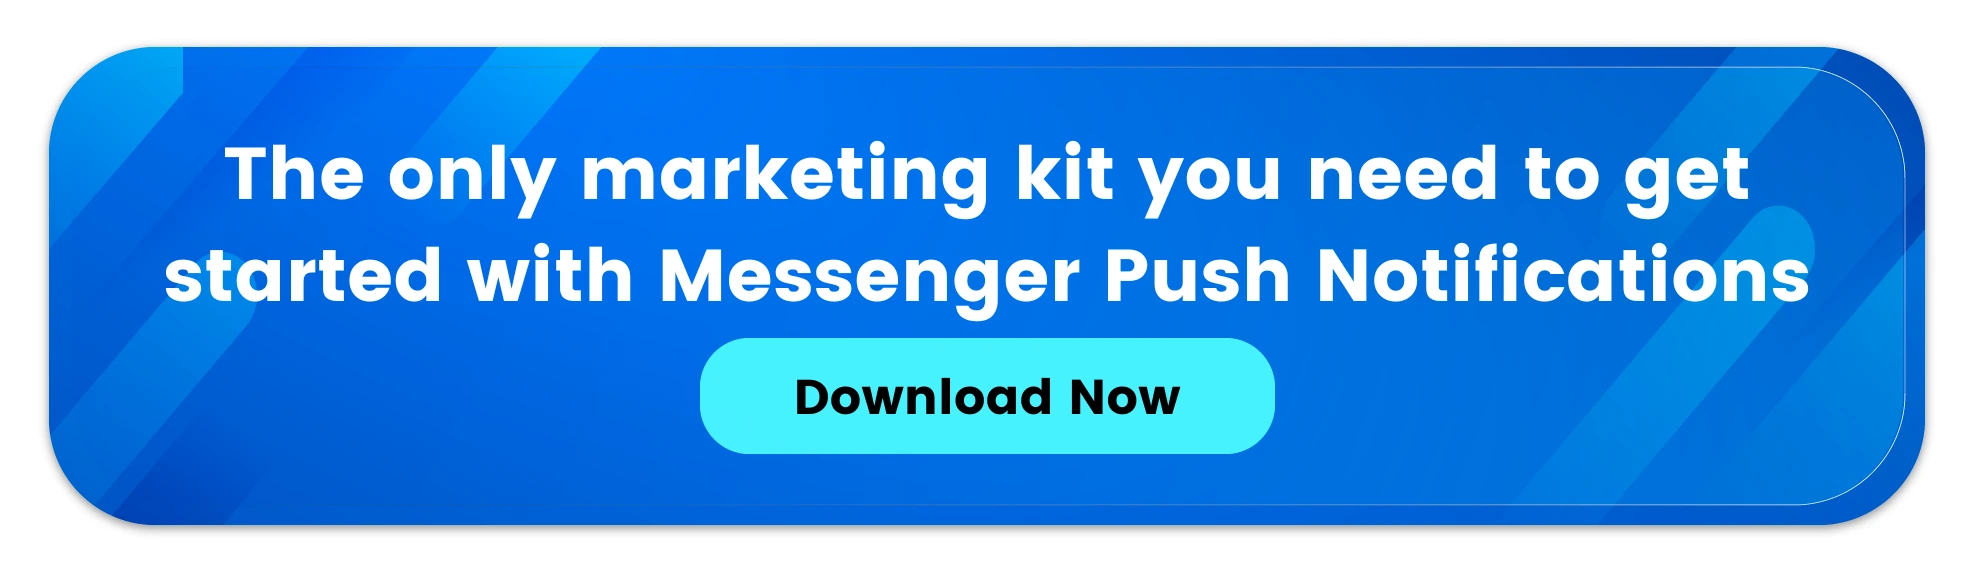 Messenger Marketing Kit